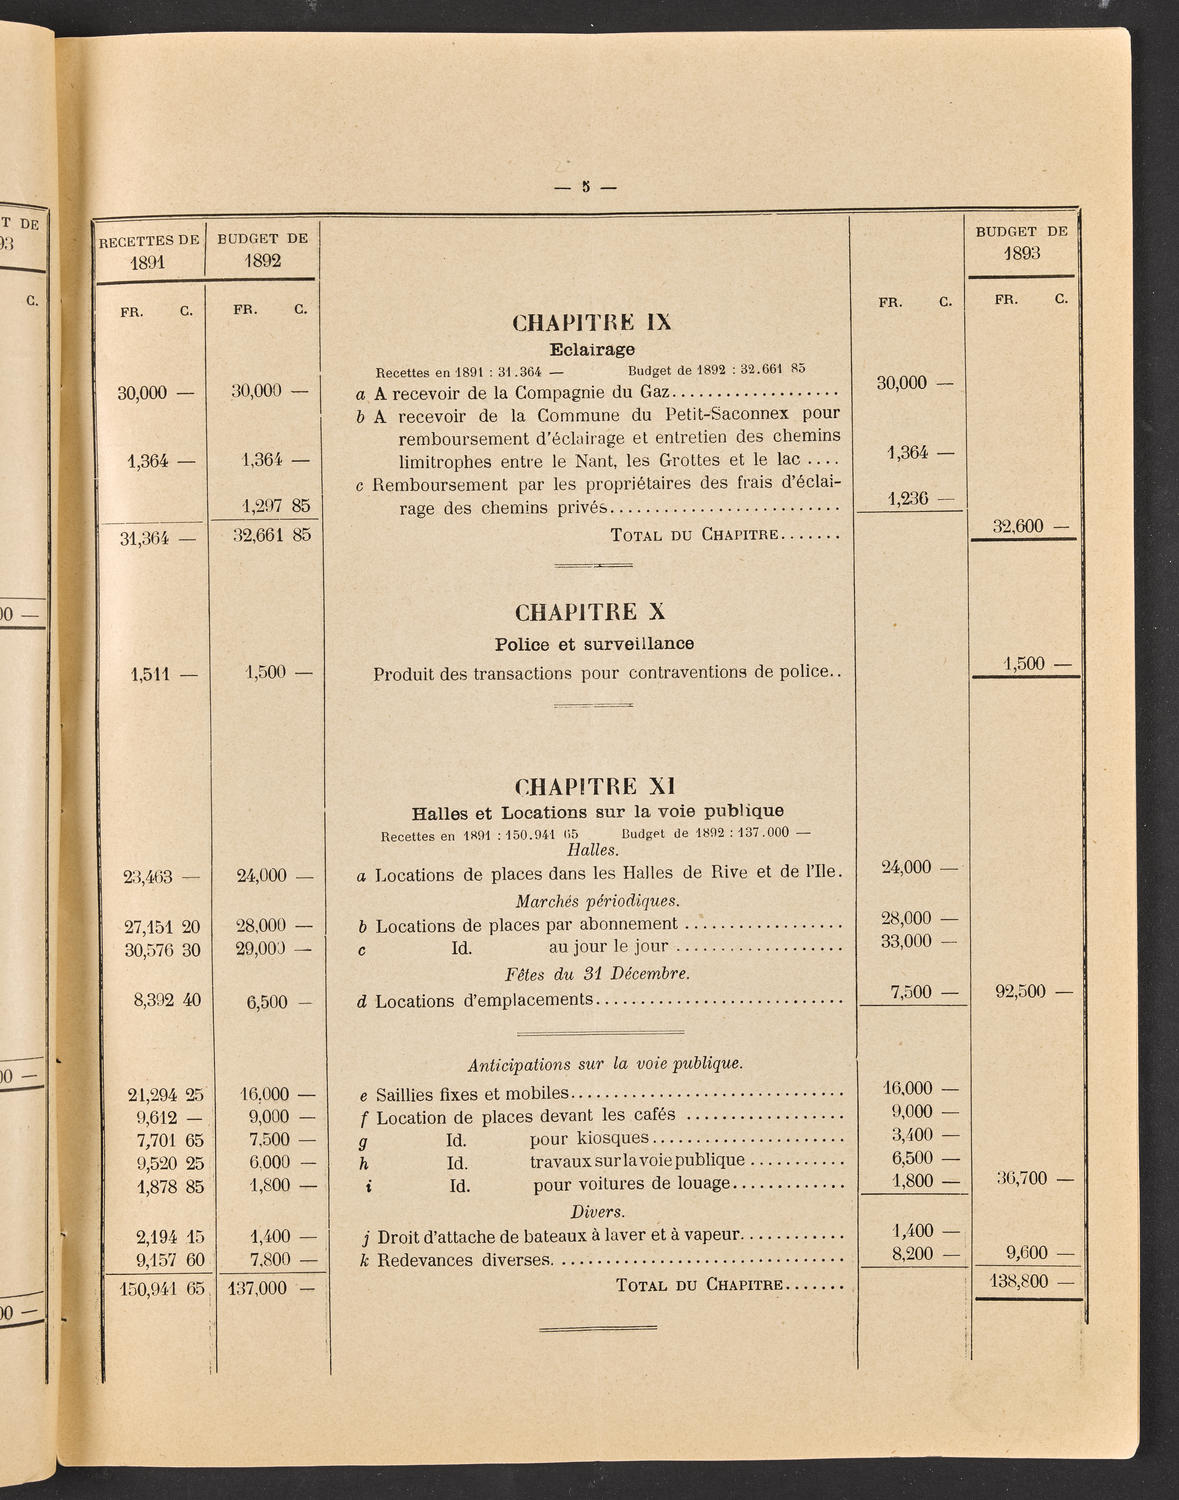 Budget de la Ville de Genève - Exercise de 1893, page 11 of 32